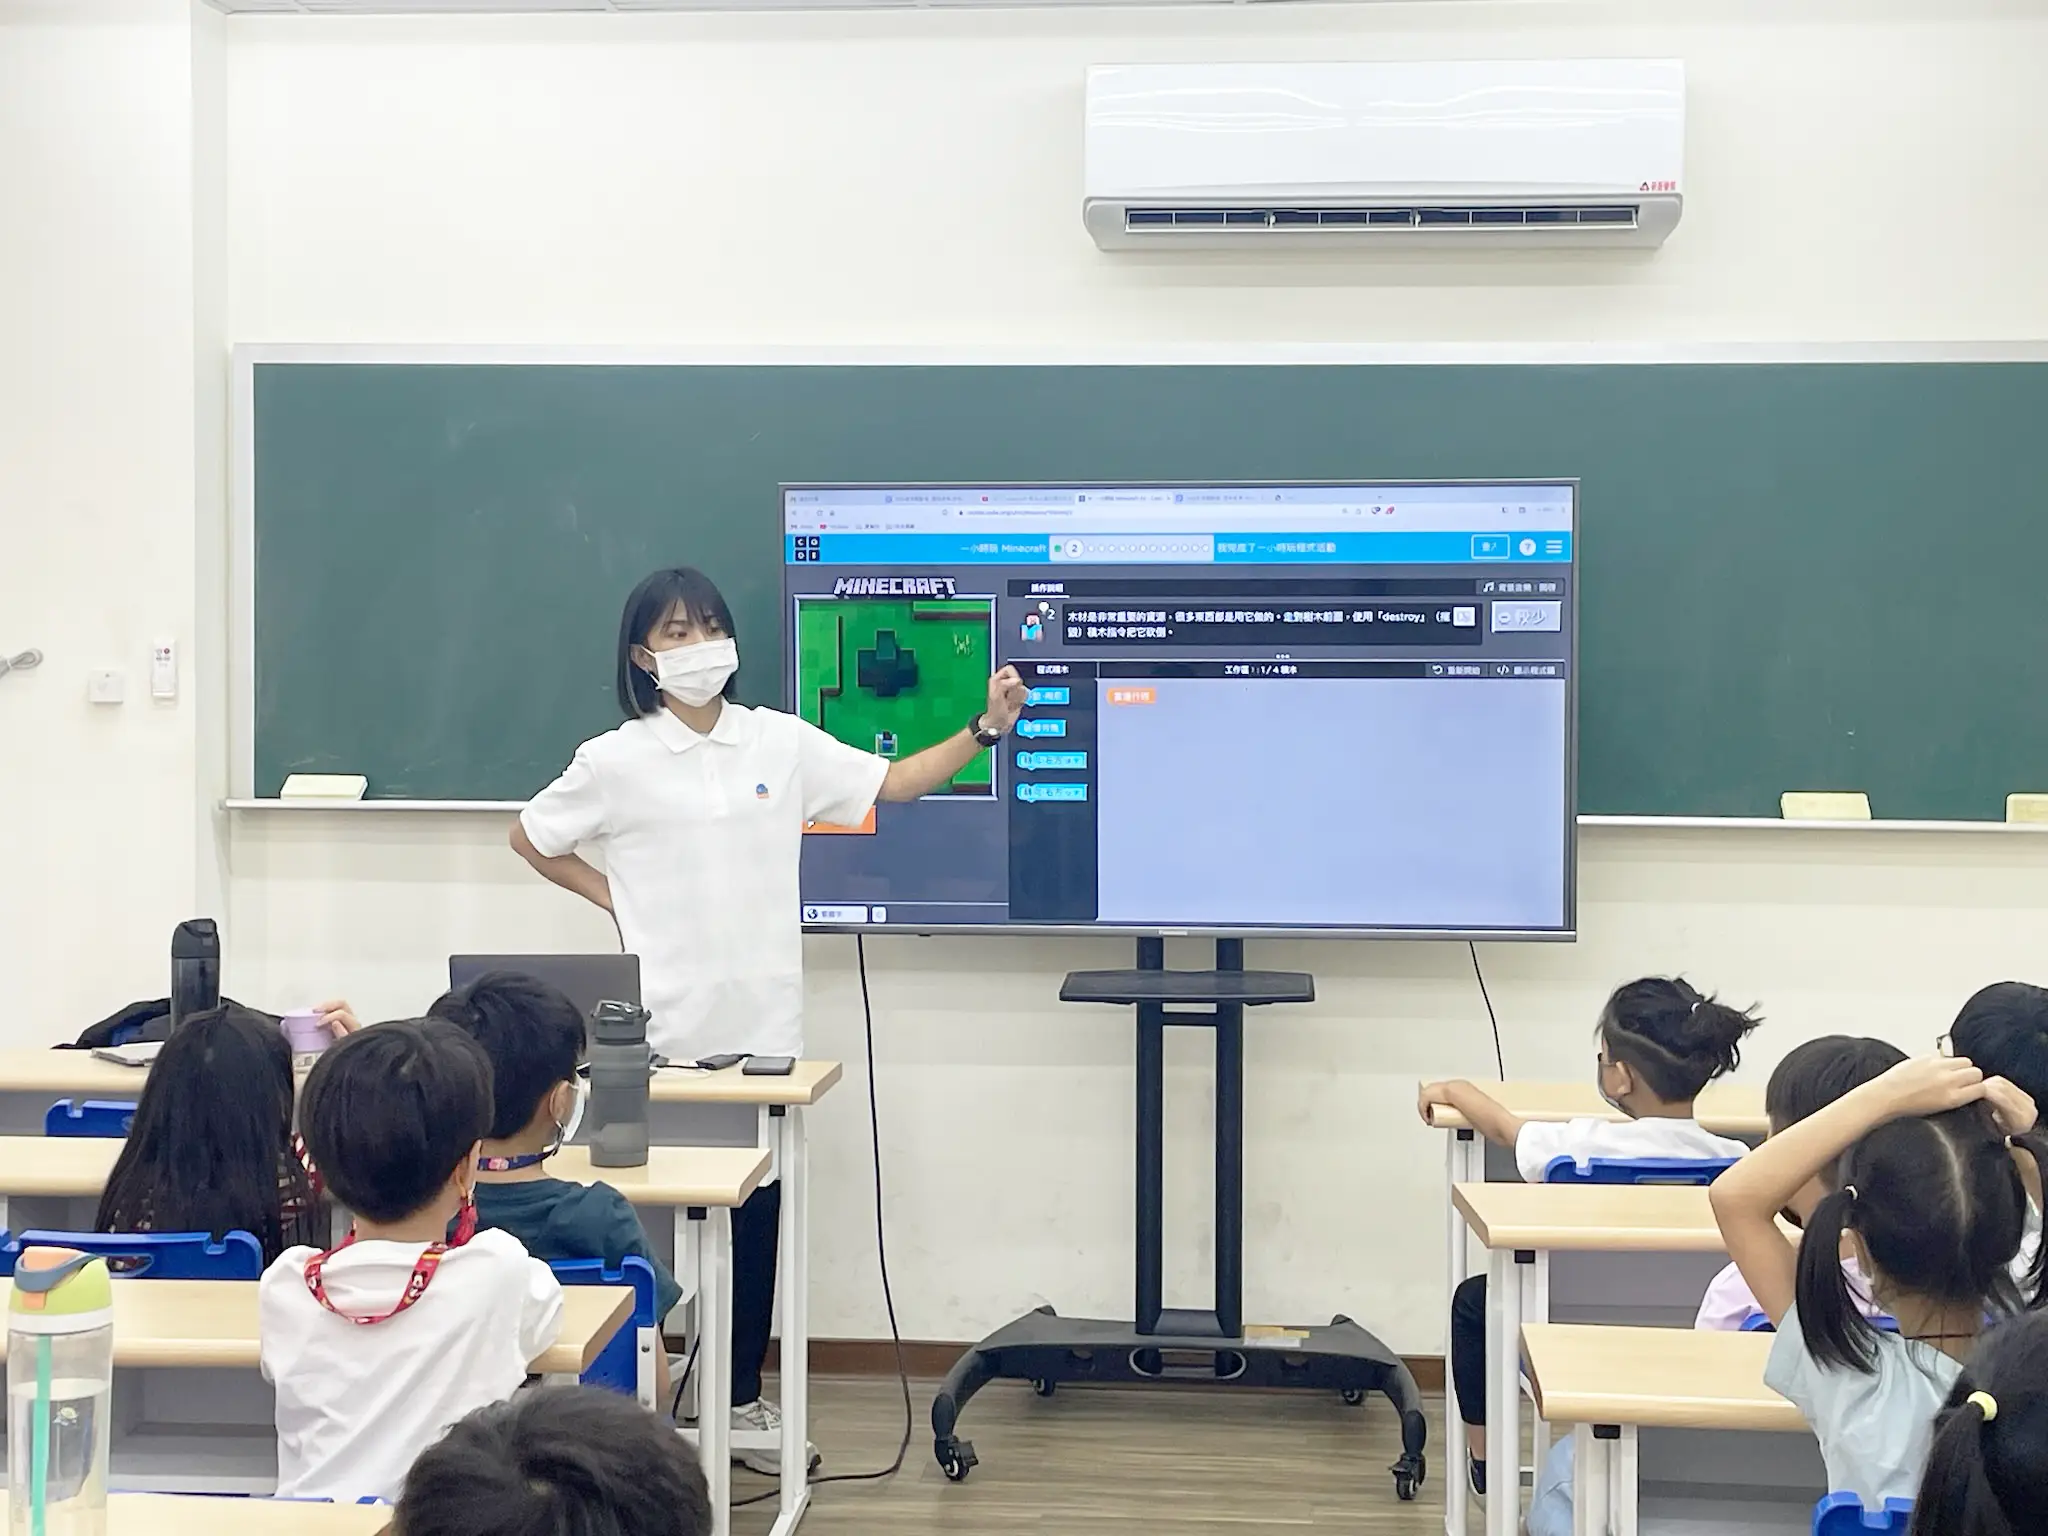 一位老師正在指著投影布幕上的Minecraft操作介面進行講解。